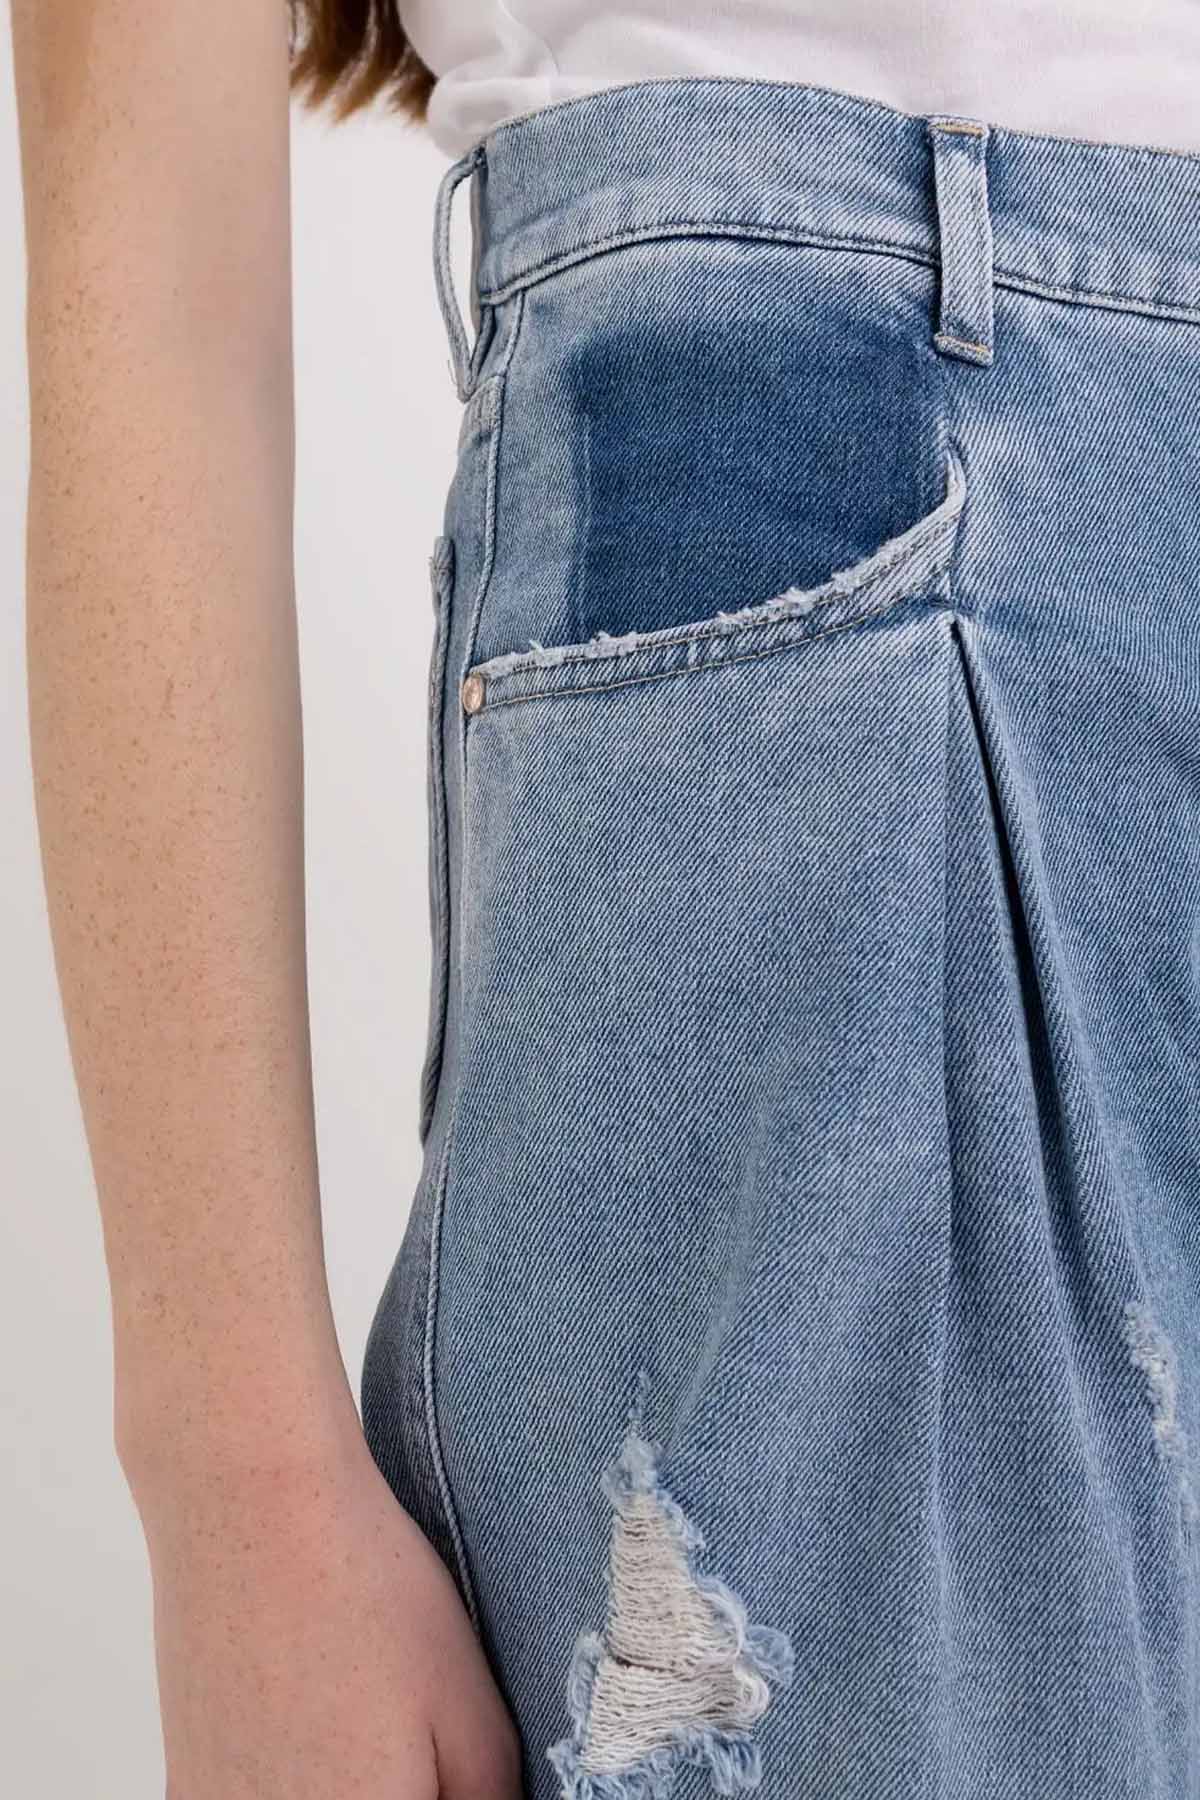 Replay Boyfriend Fit Tek Pile Jeans-Libas Trendy Fashion Store